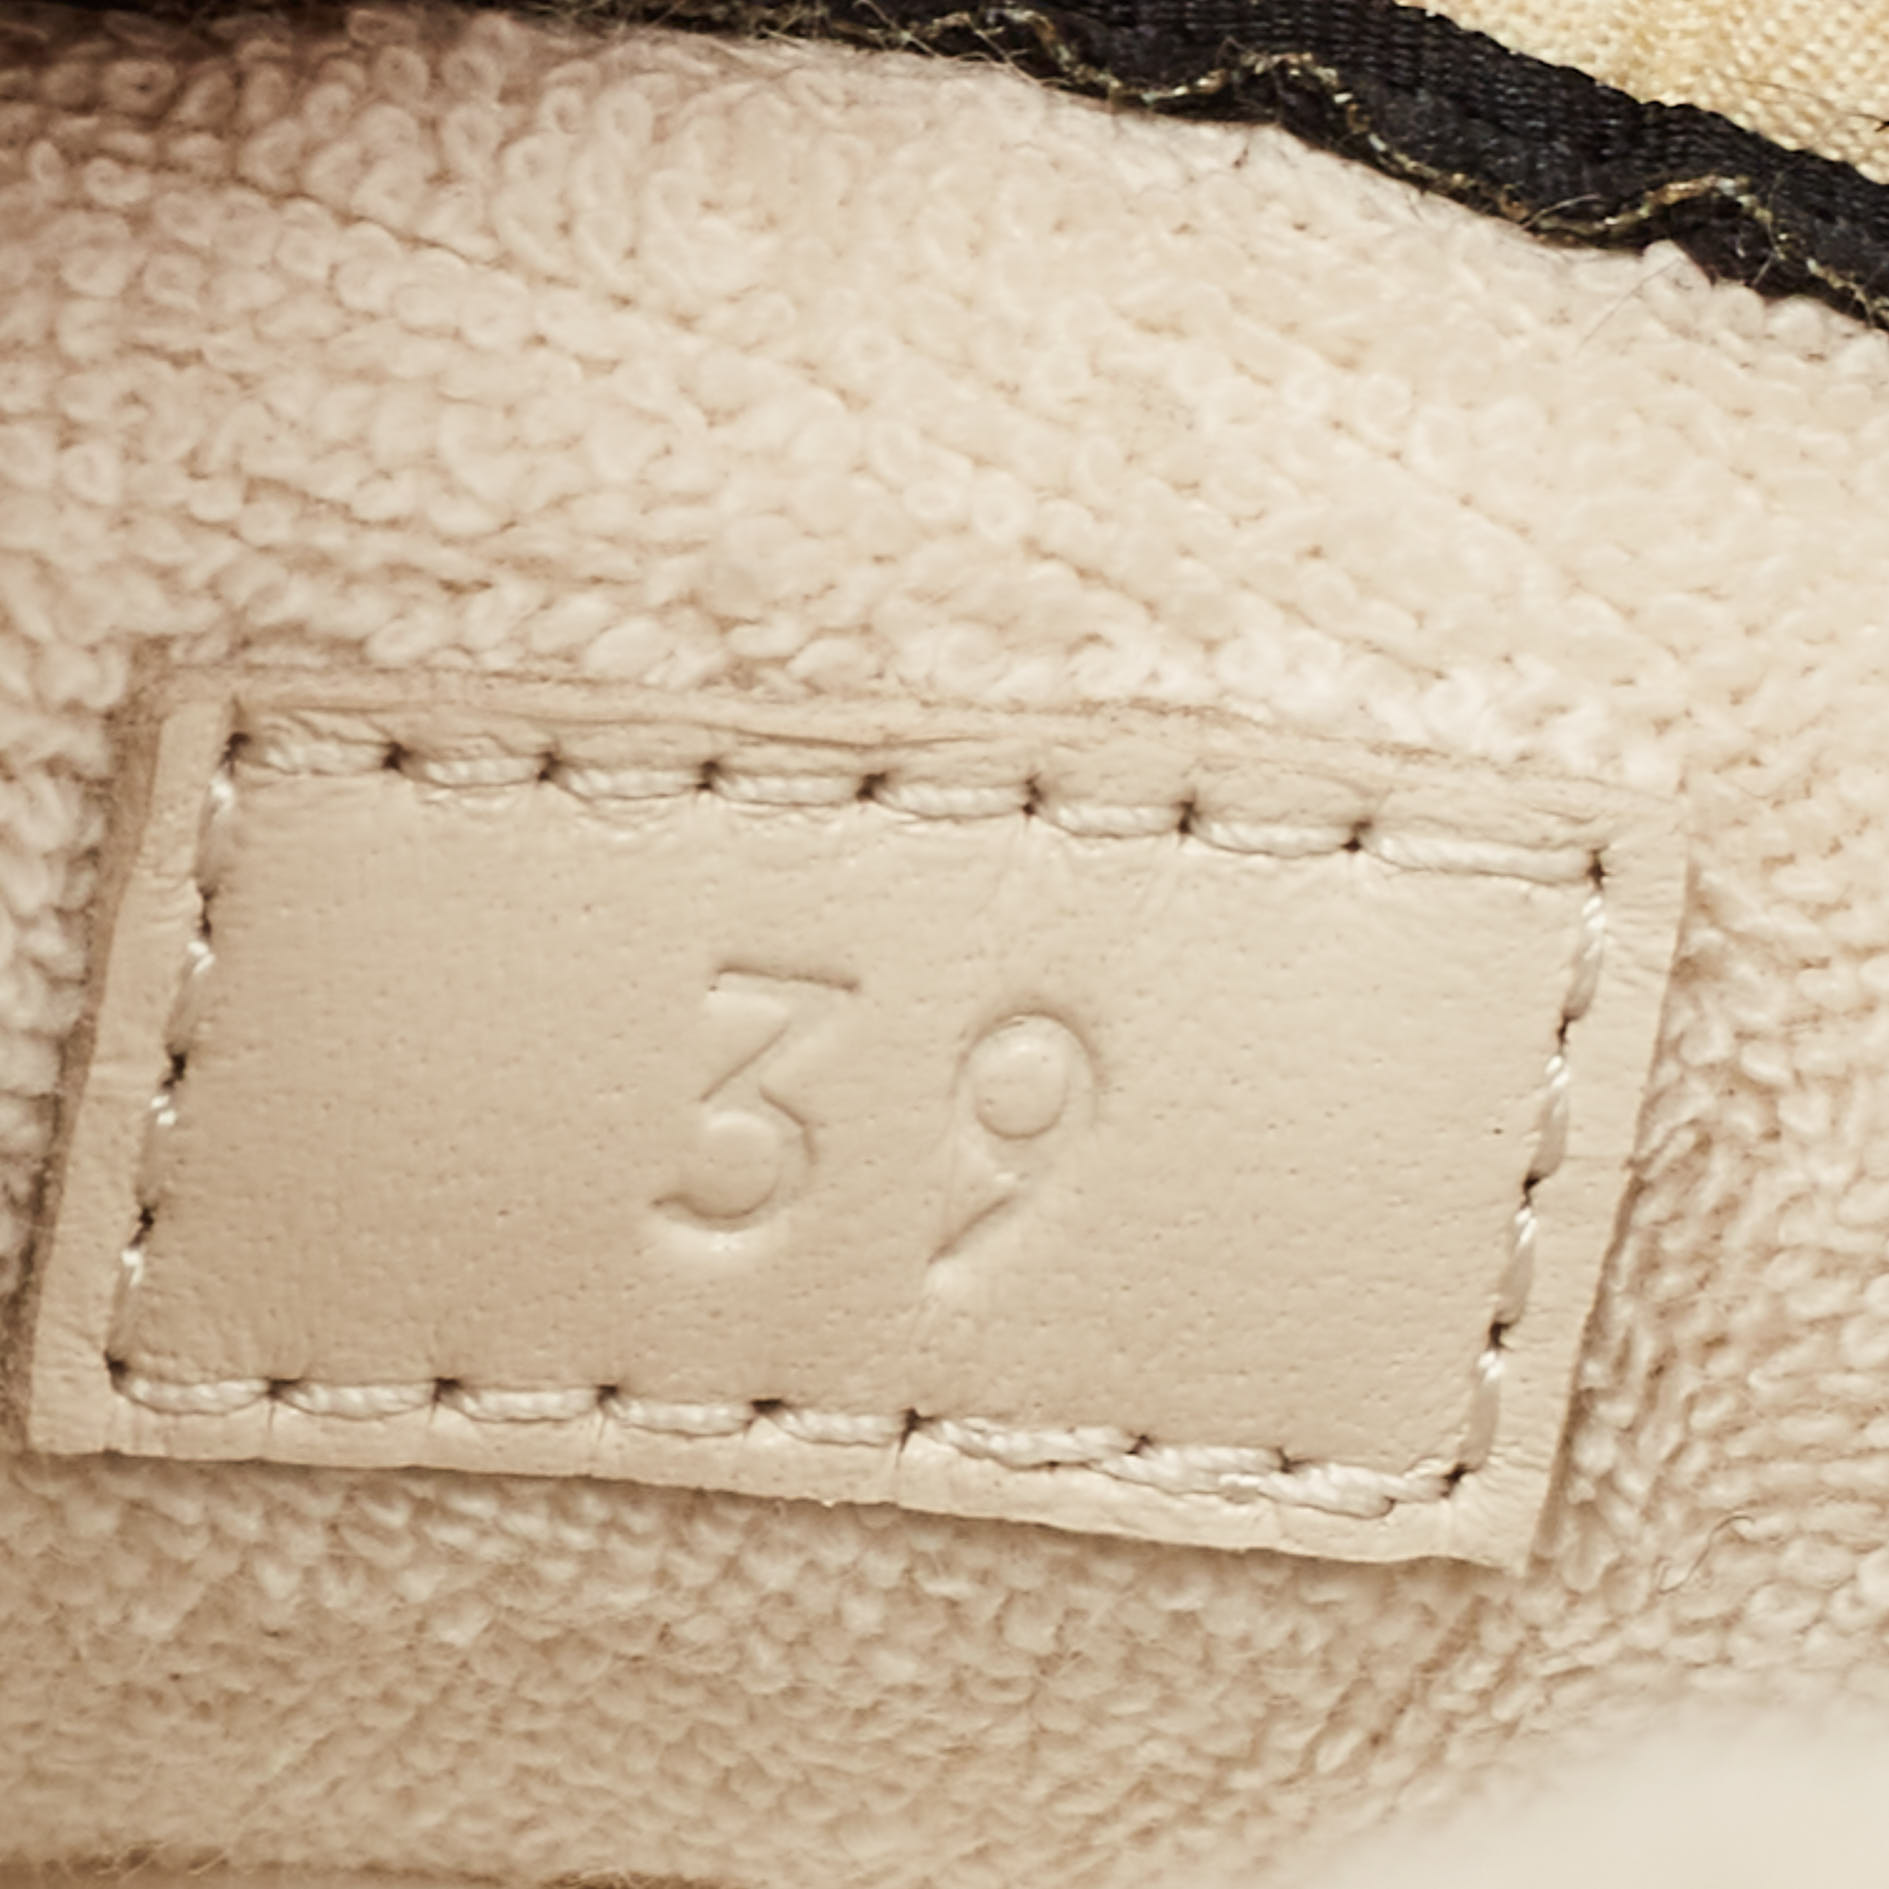 Gucci Multicolor GG Supreme Canvas Screener Sneakers Size 39